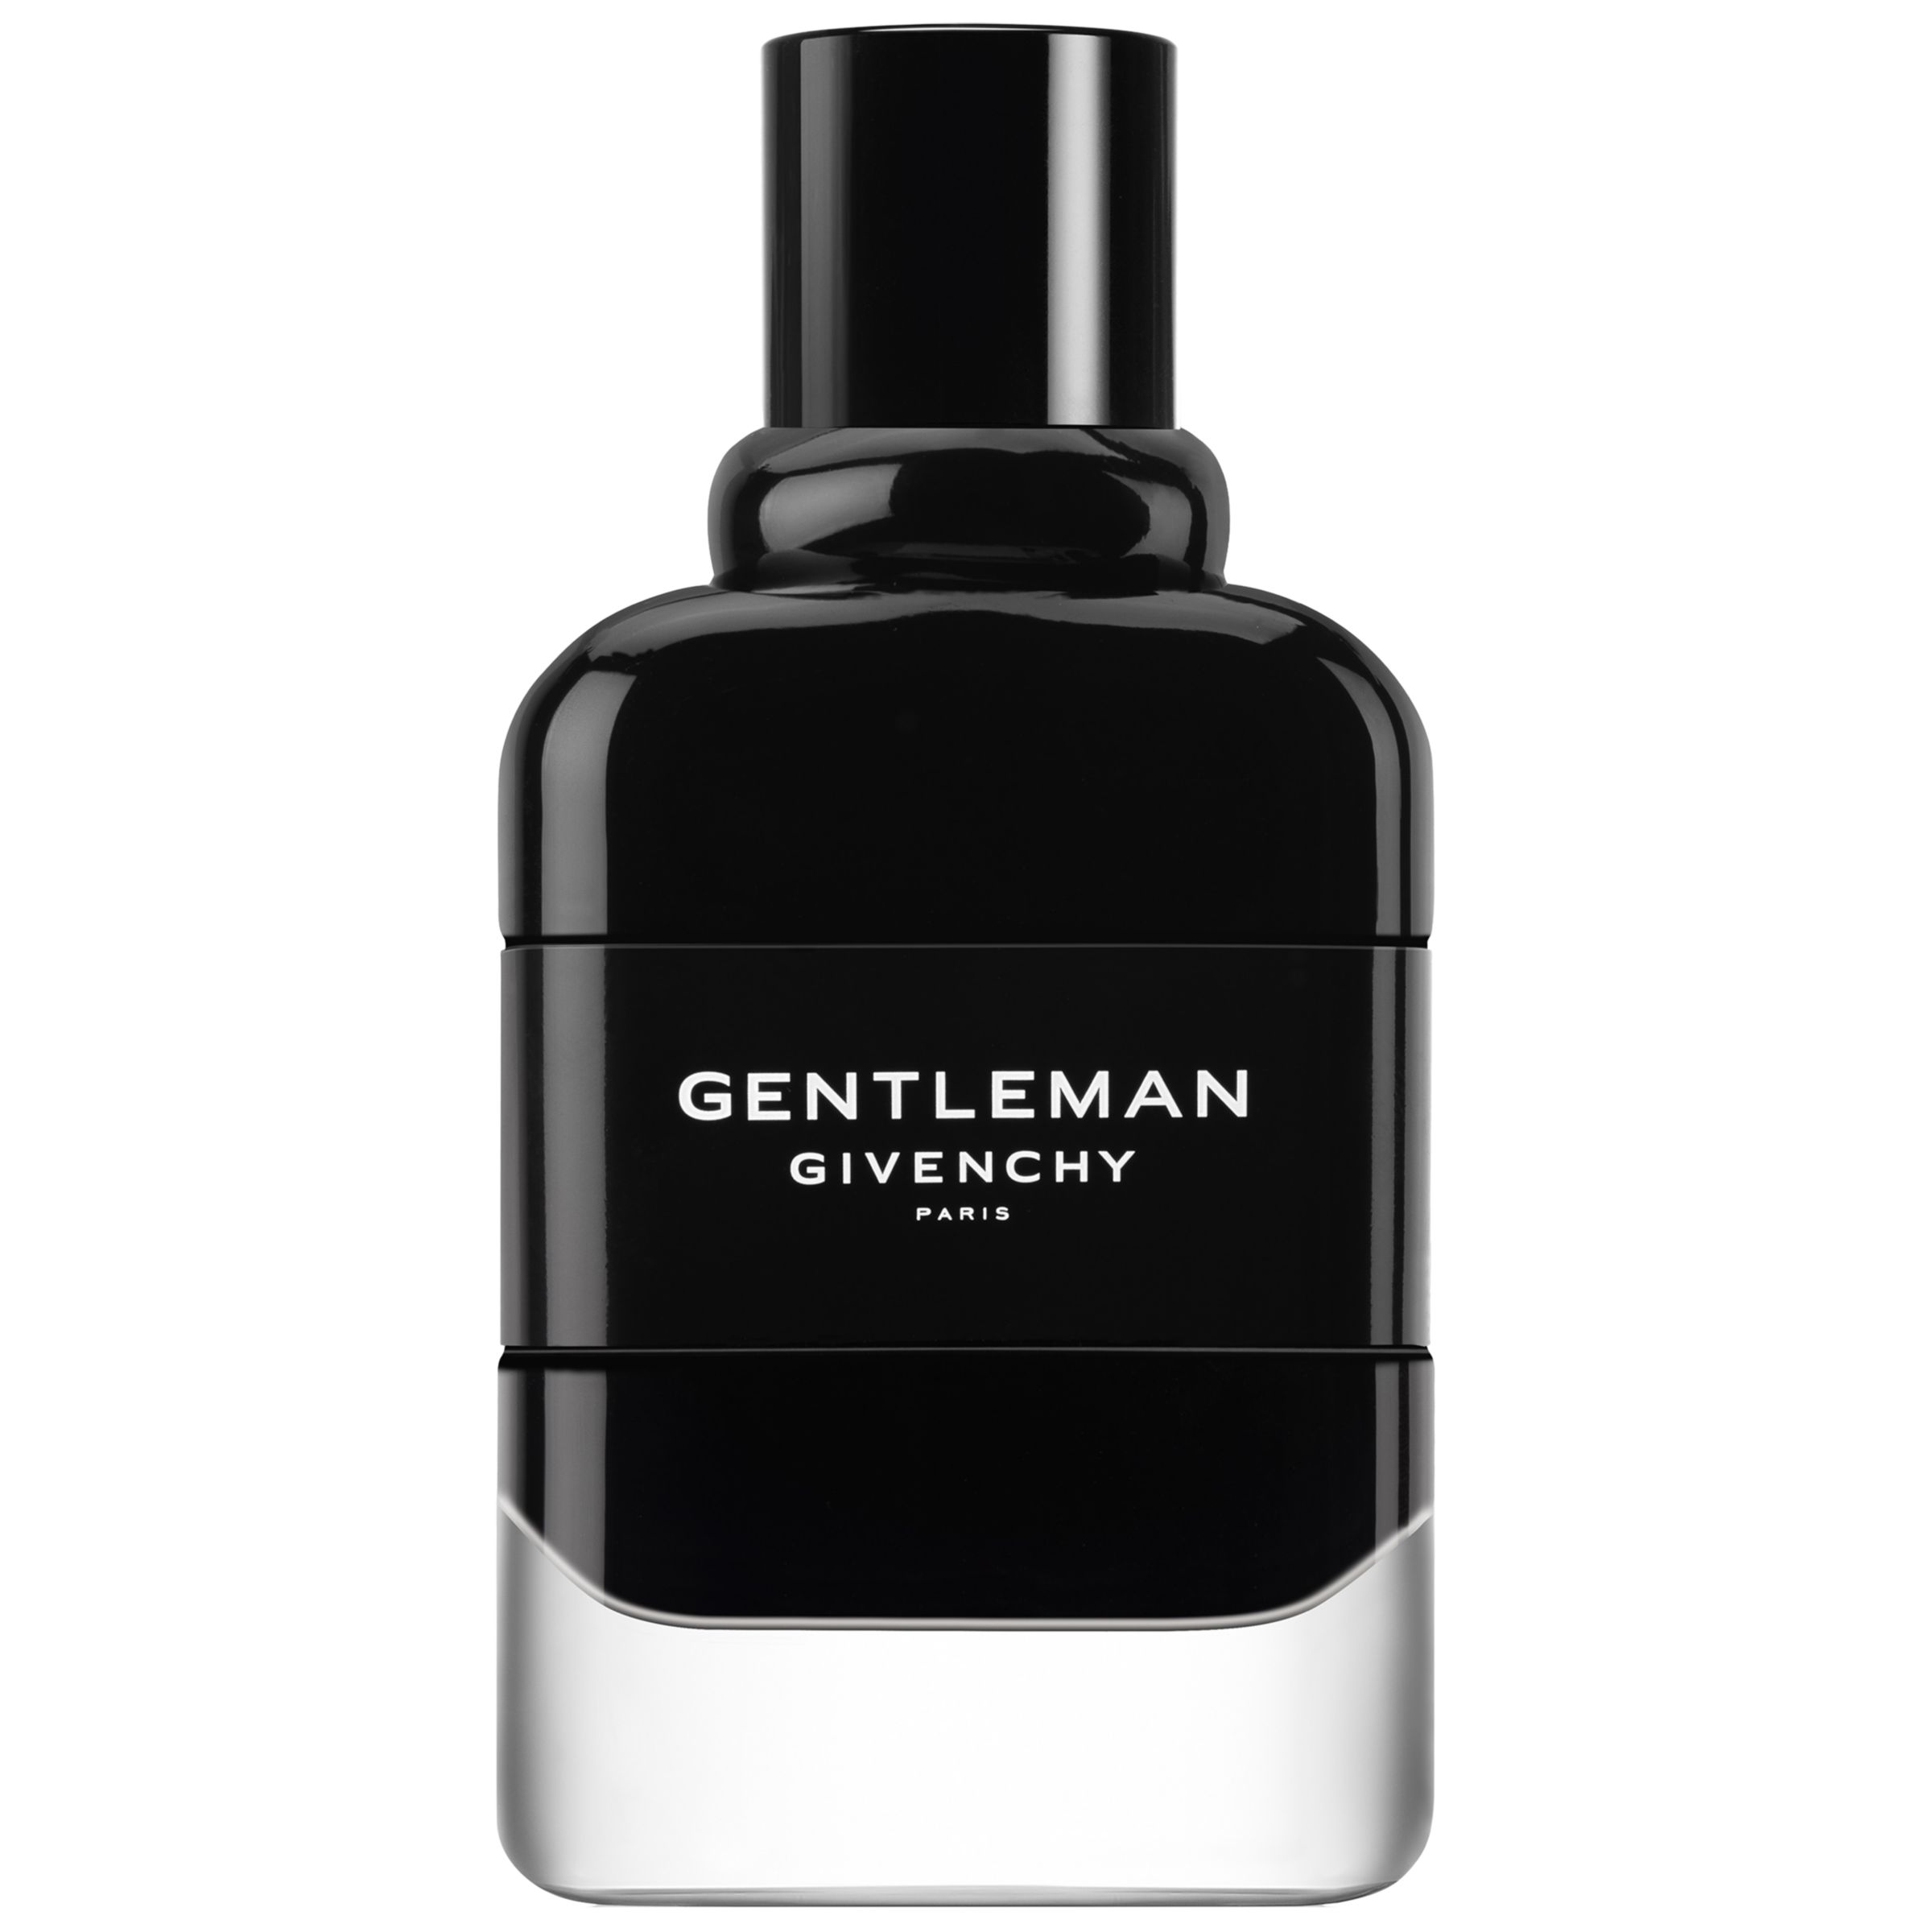 Givenchy Gentleman Eau de Parfum at 